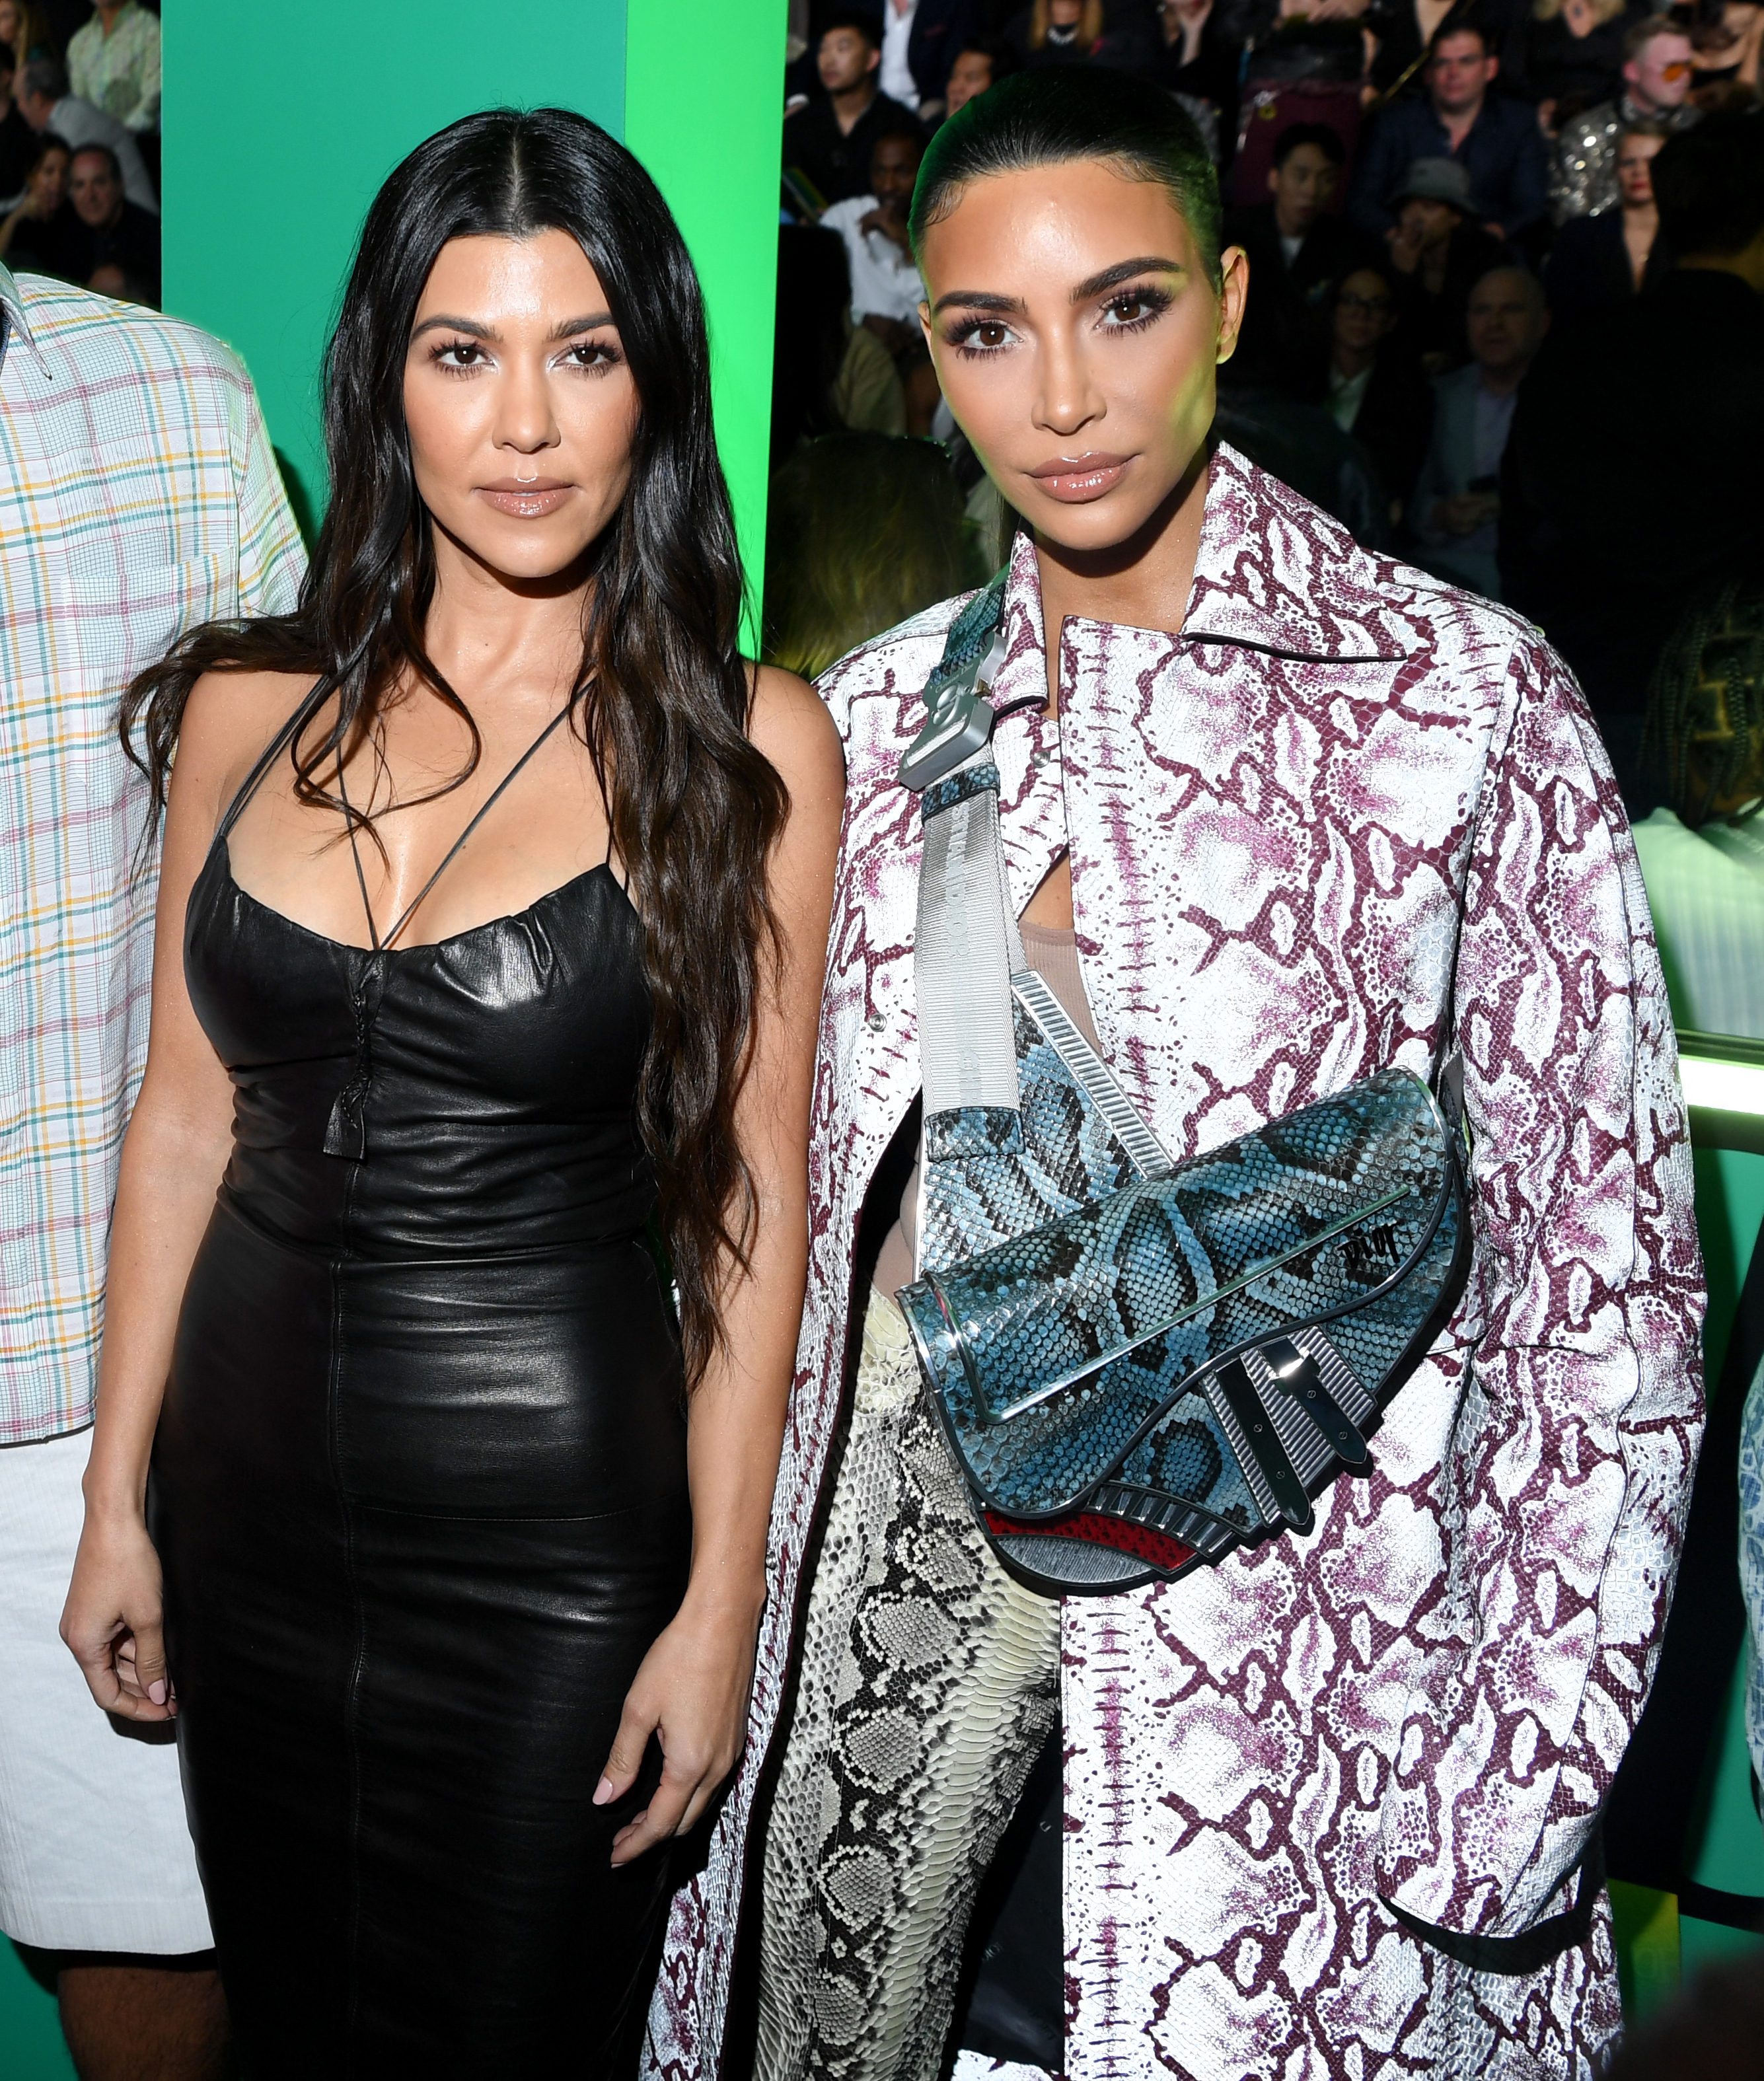 Closeup of Kourtney Kardashian Barker and Kim Kardashian at an event